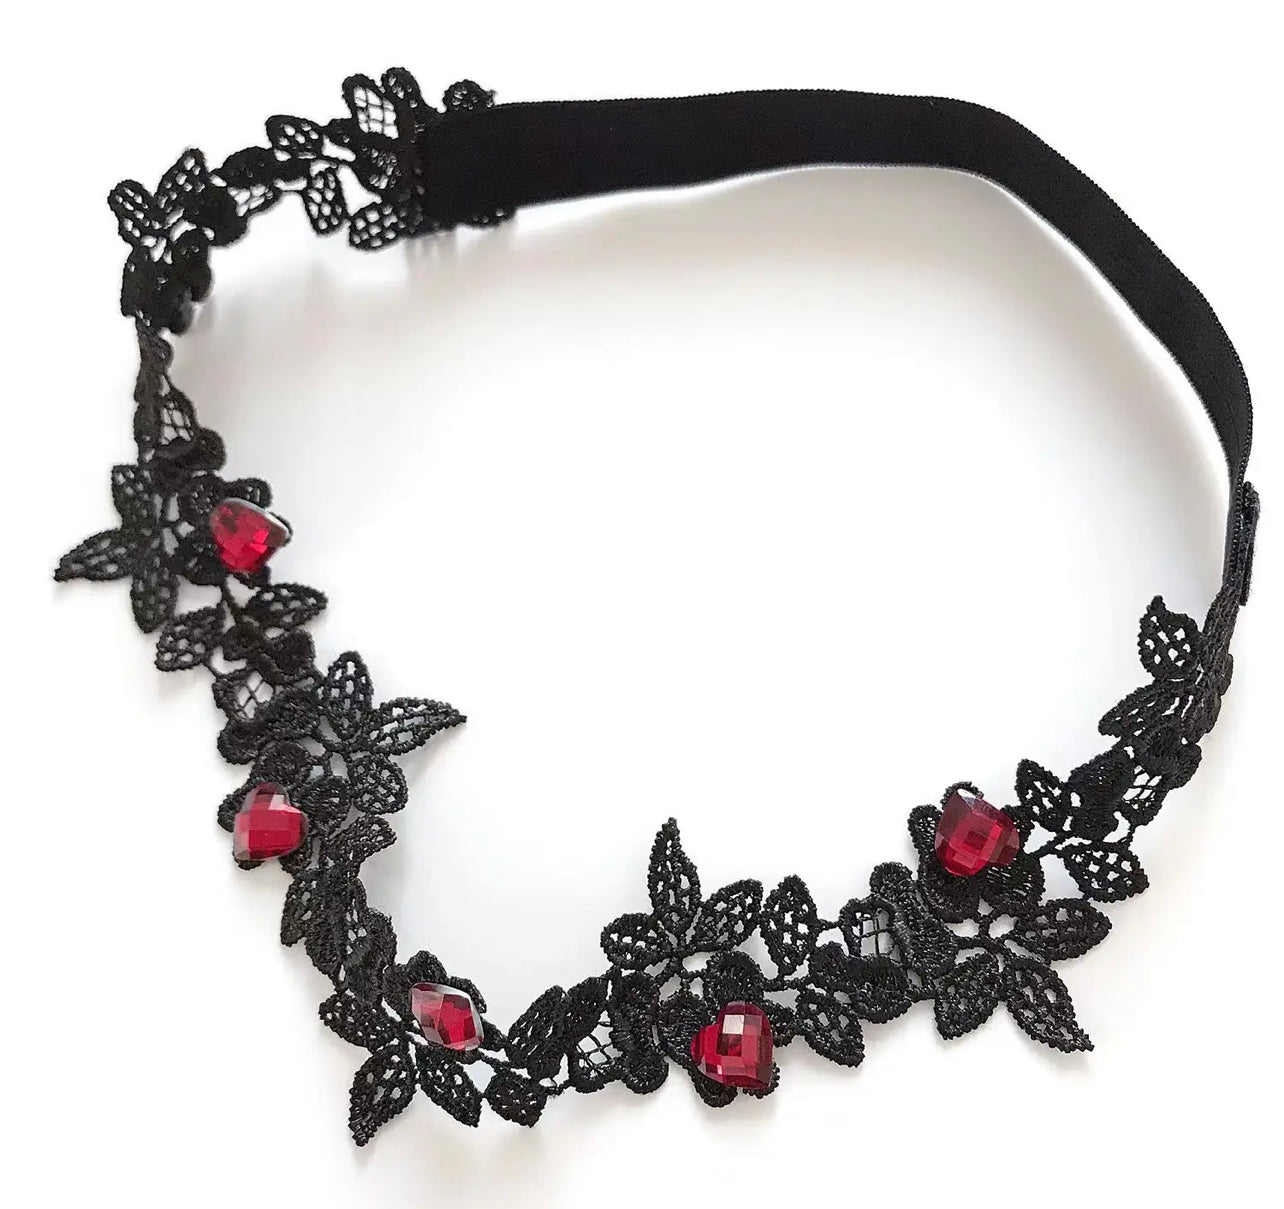 Black Garter Belt Set with Rose Flower and Red Gems